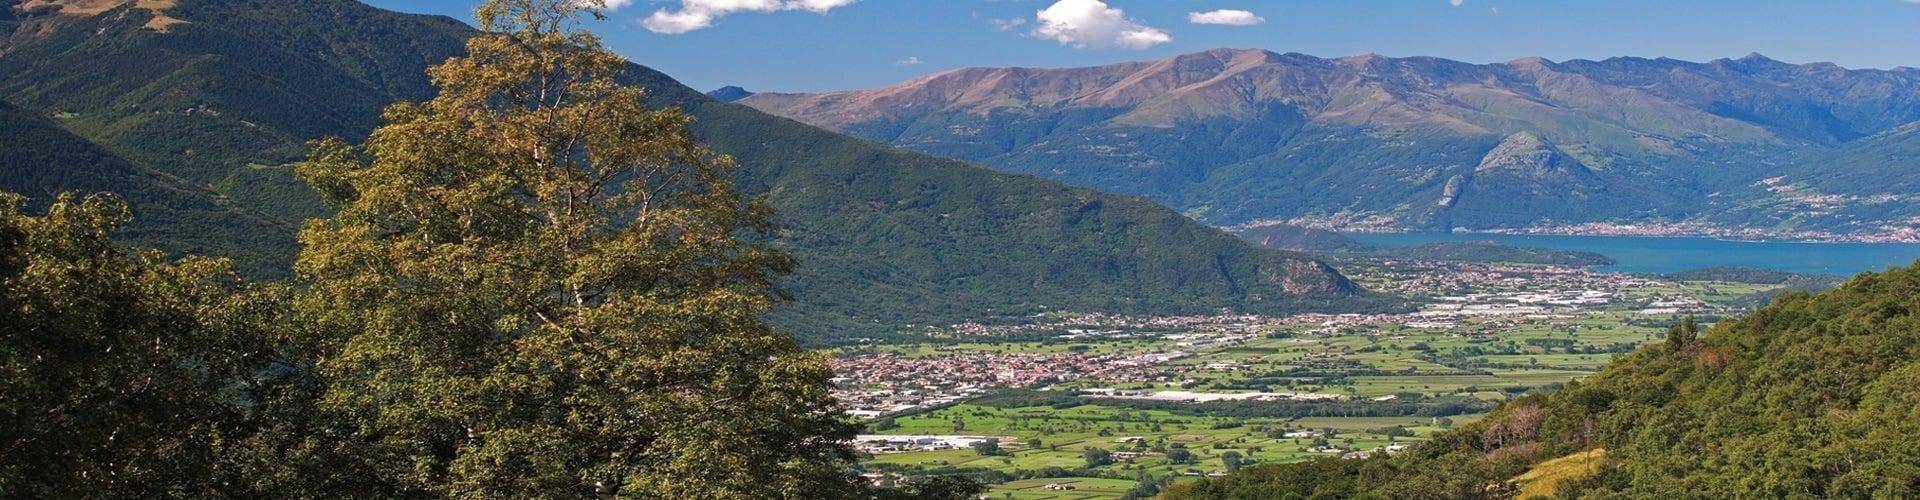 Prodotti tipici della Bassa Valtellina: Piantedo e Delebio